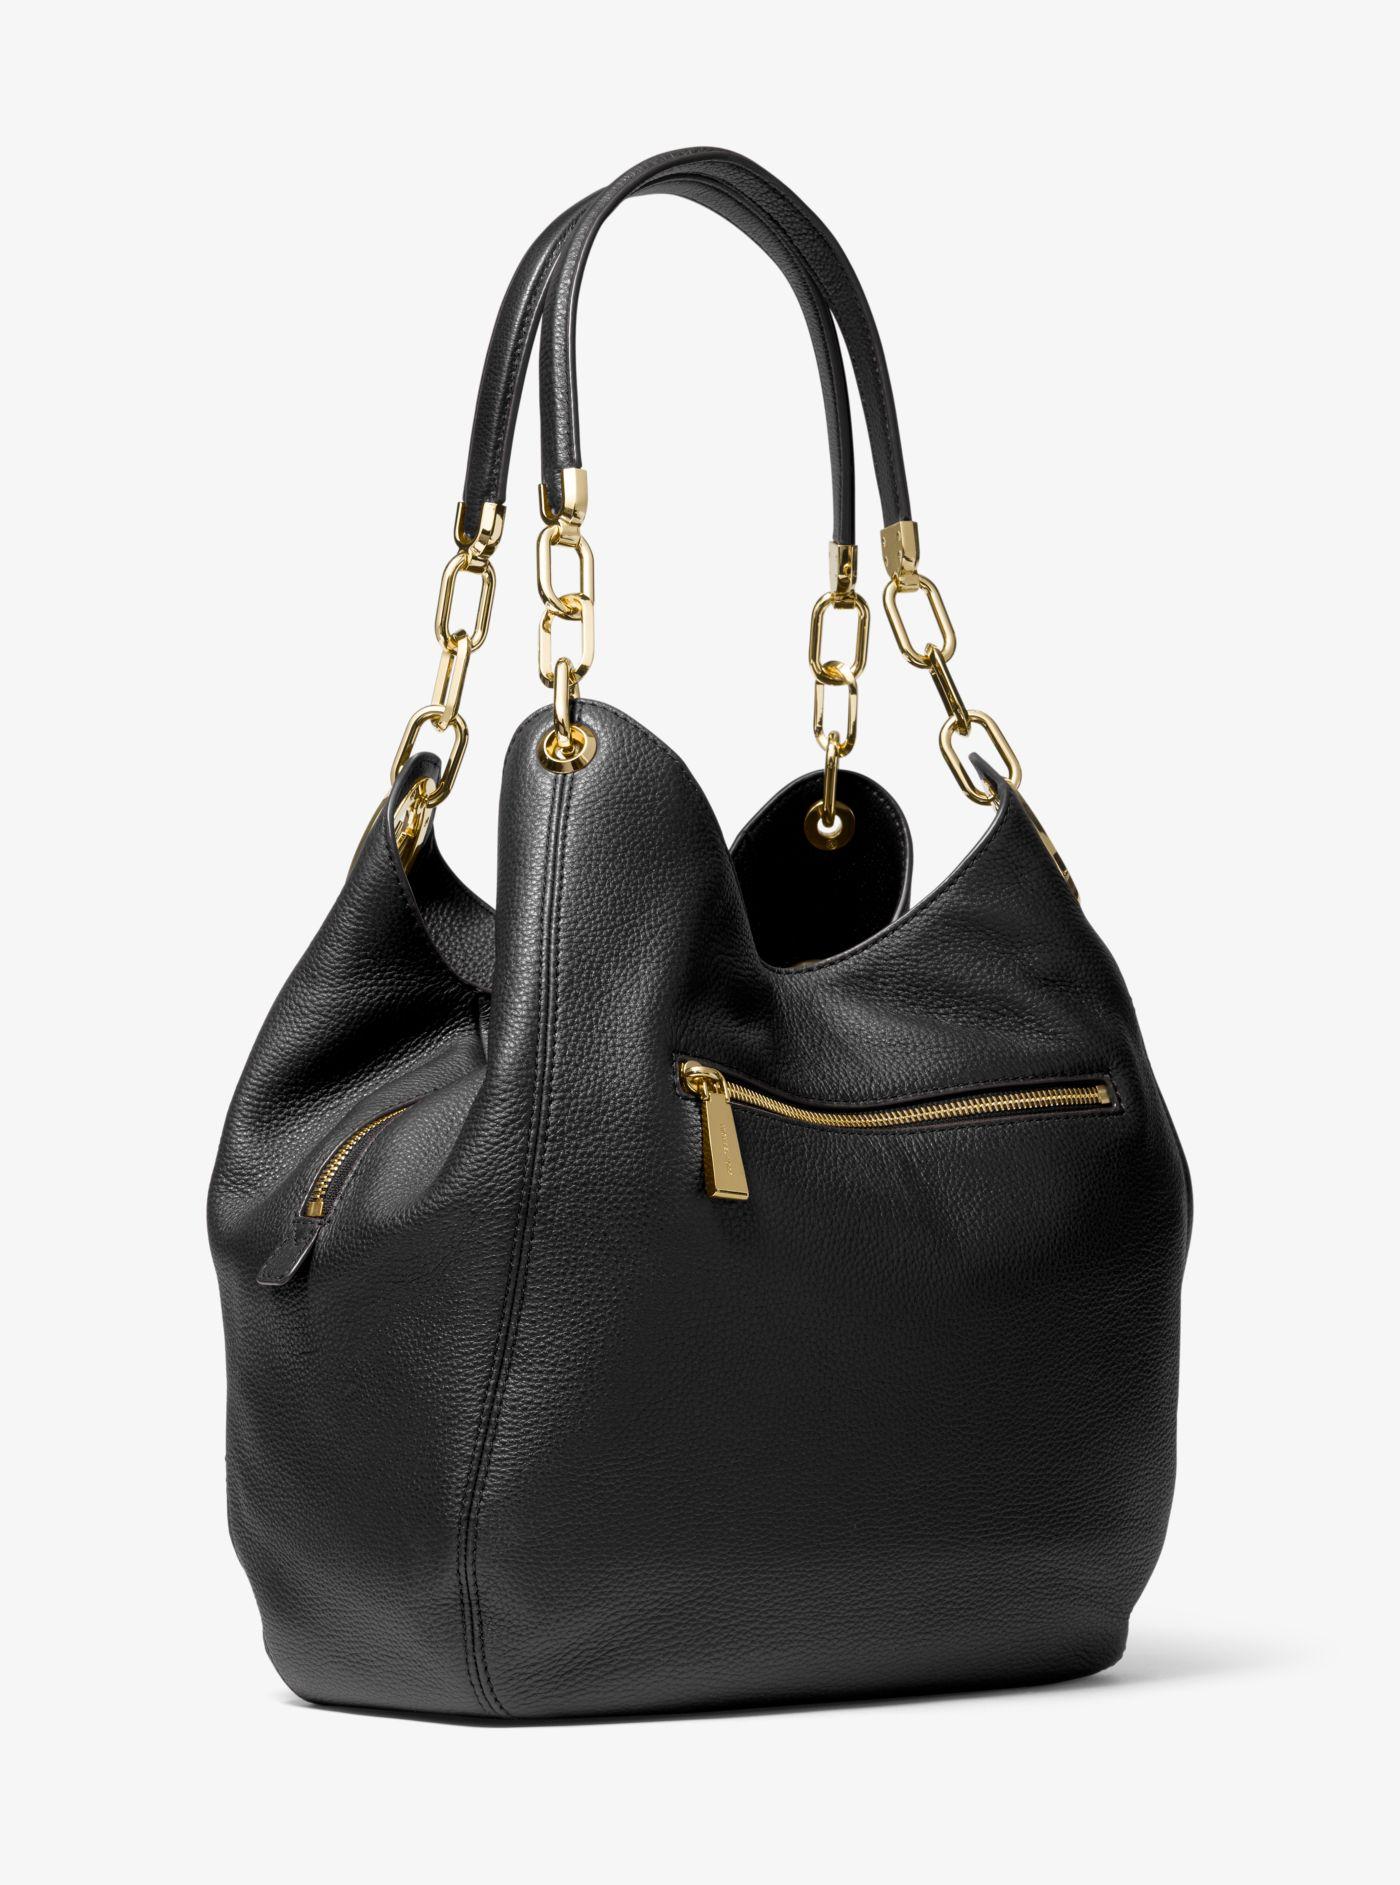 Michael Kors Lillie Large Pebbled Leather Shoulder Bag in Black | Lyst